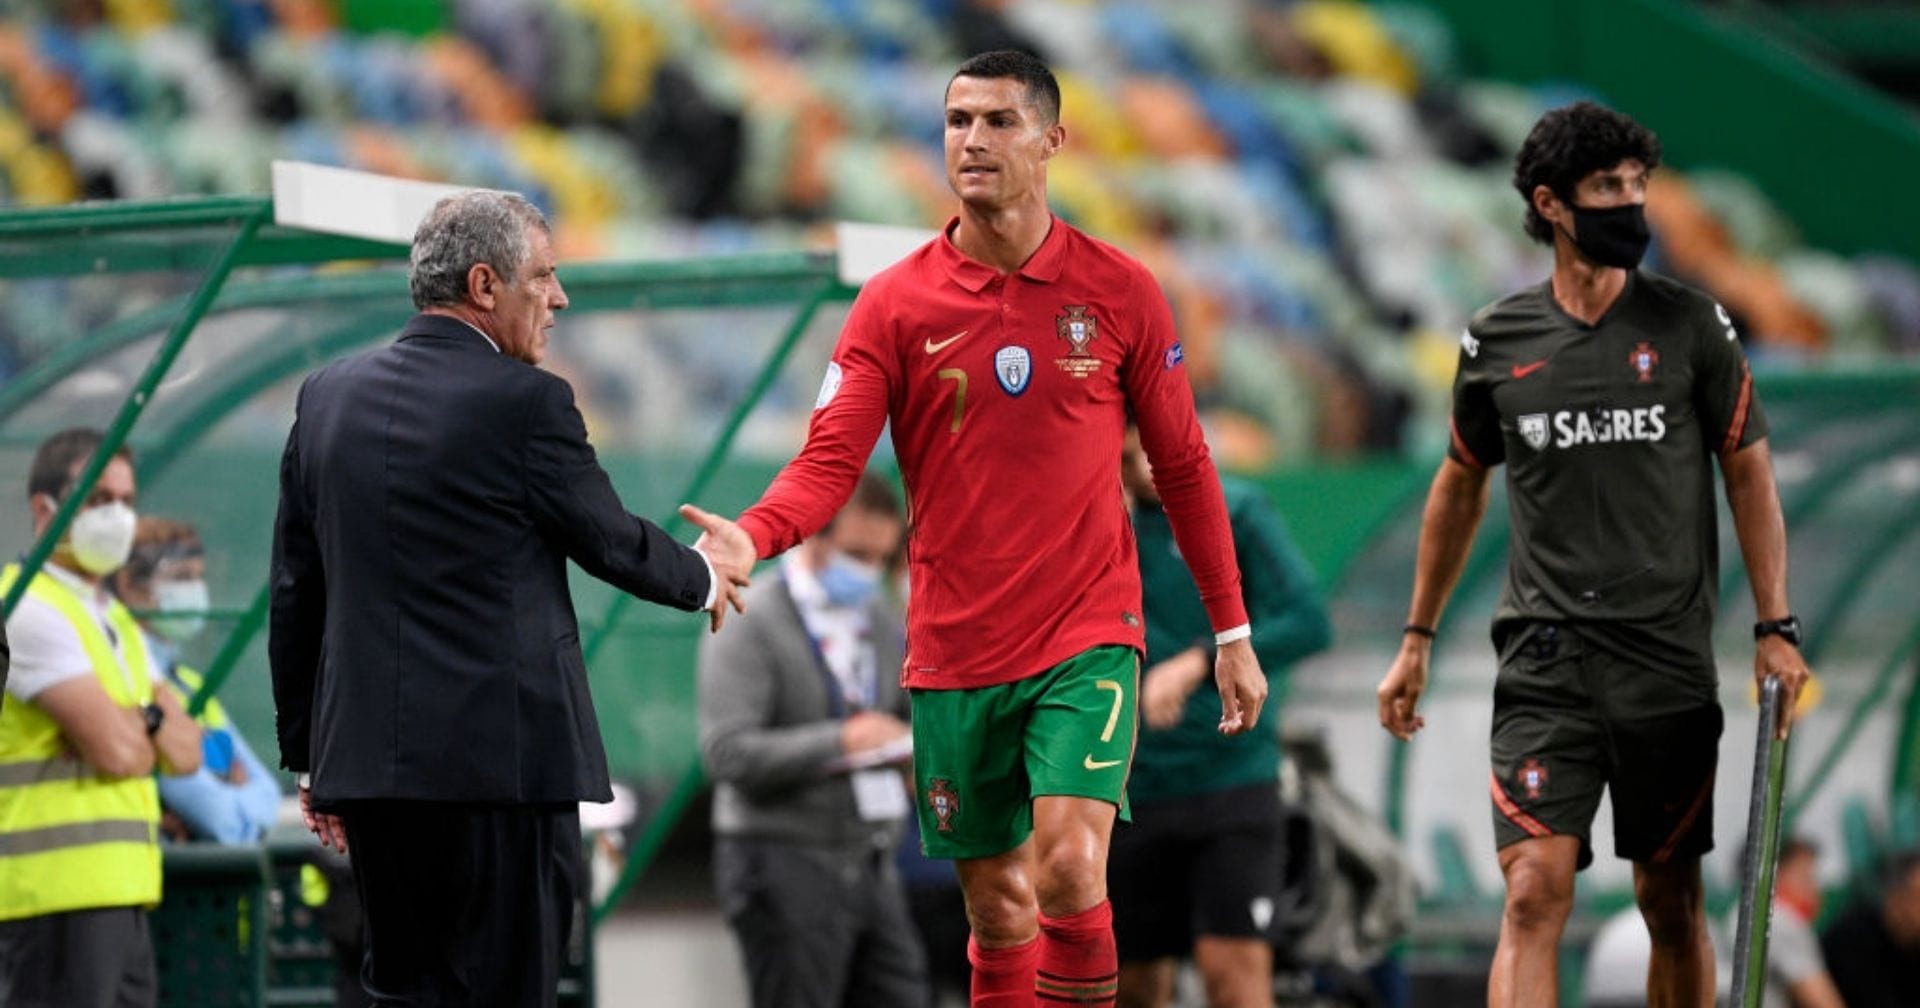 Cristiano Ronaldo đạt kỷ lục cầu thủ ghi bàn nhiều nhất cấp độ đội tuyển Bồ Đào Nha